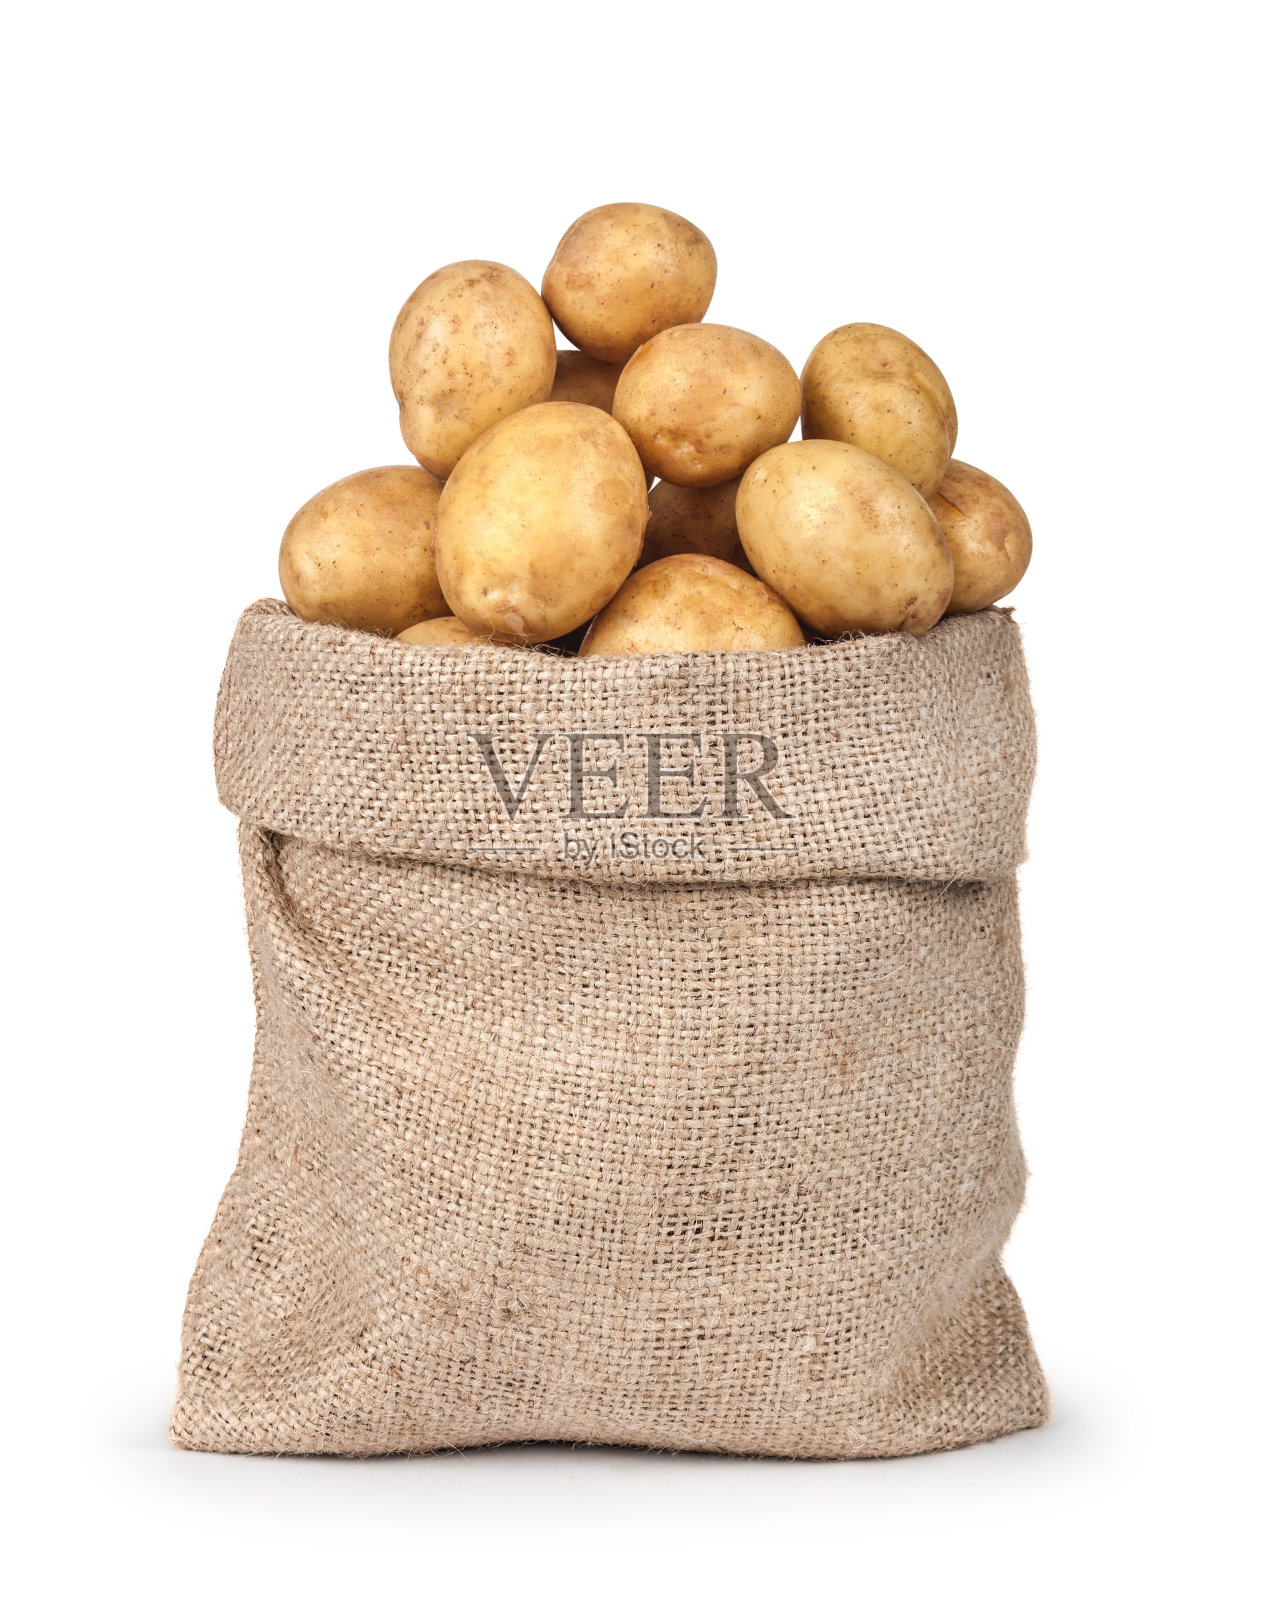 袋子里的土豆孤立在白色的背景上。特写镜头照片摄影图片